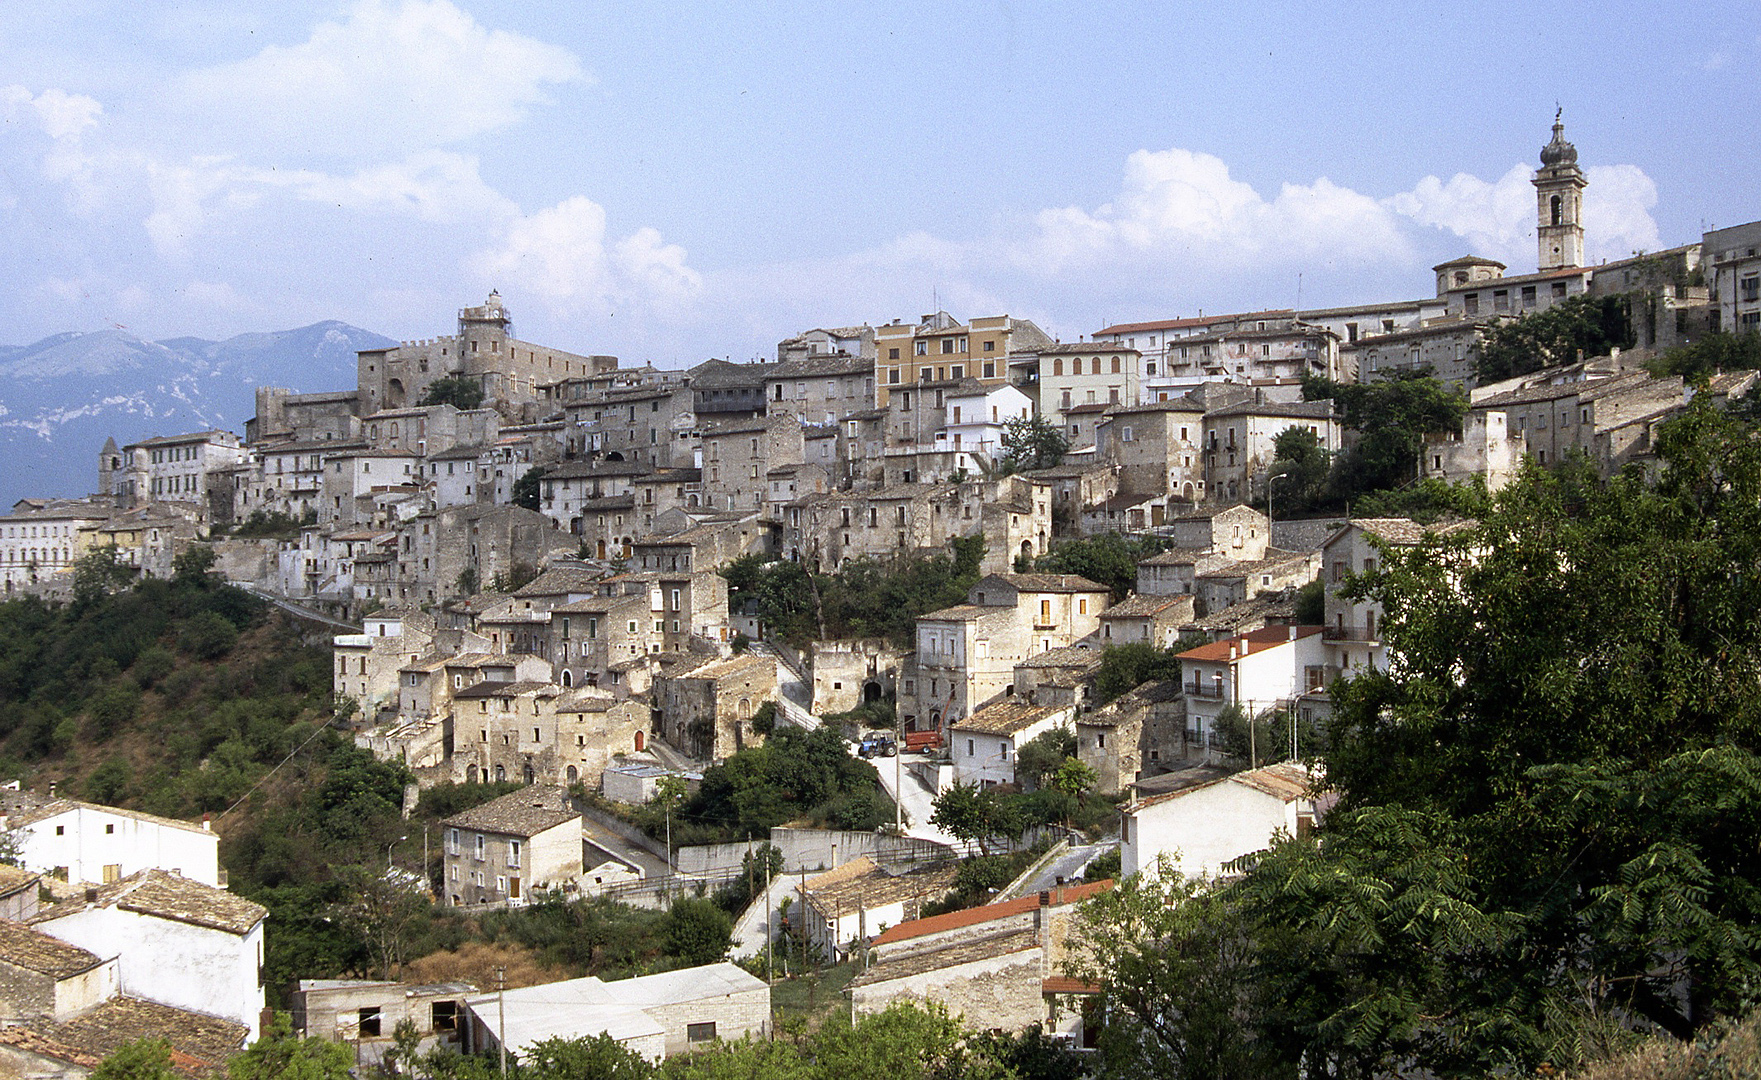 Capestrano (Abruzzen, Itali), Capestrano (Abruzzo, Italy)